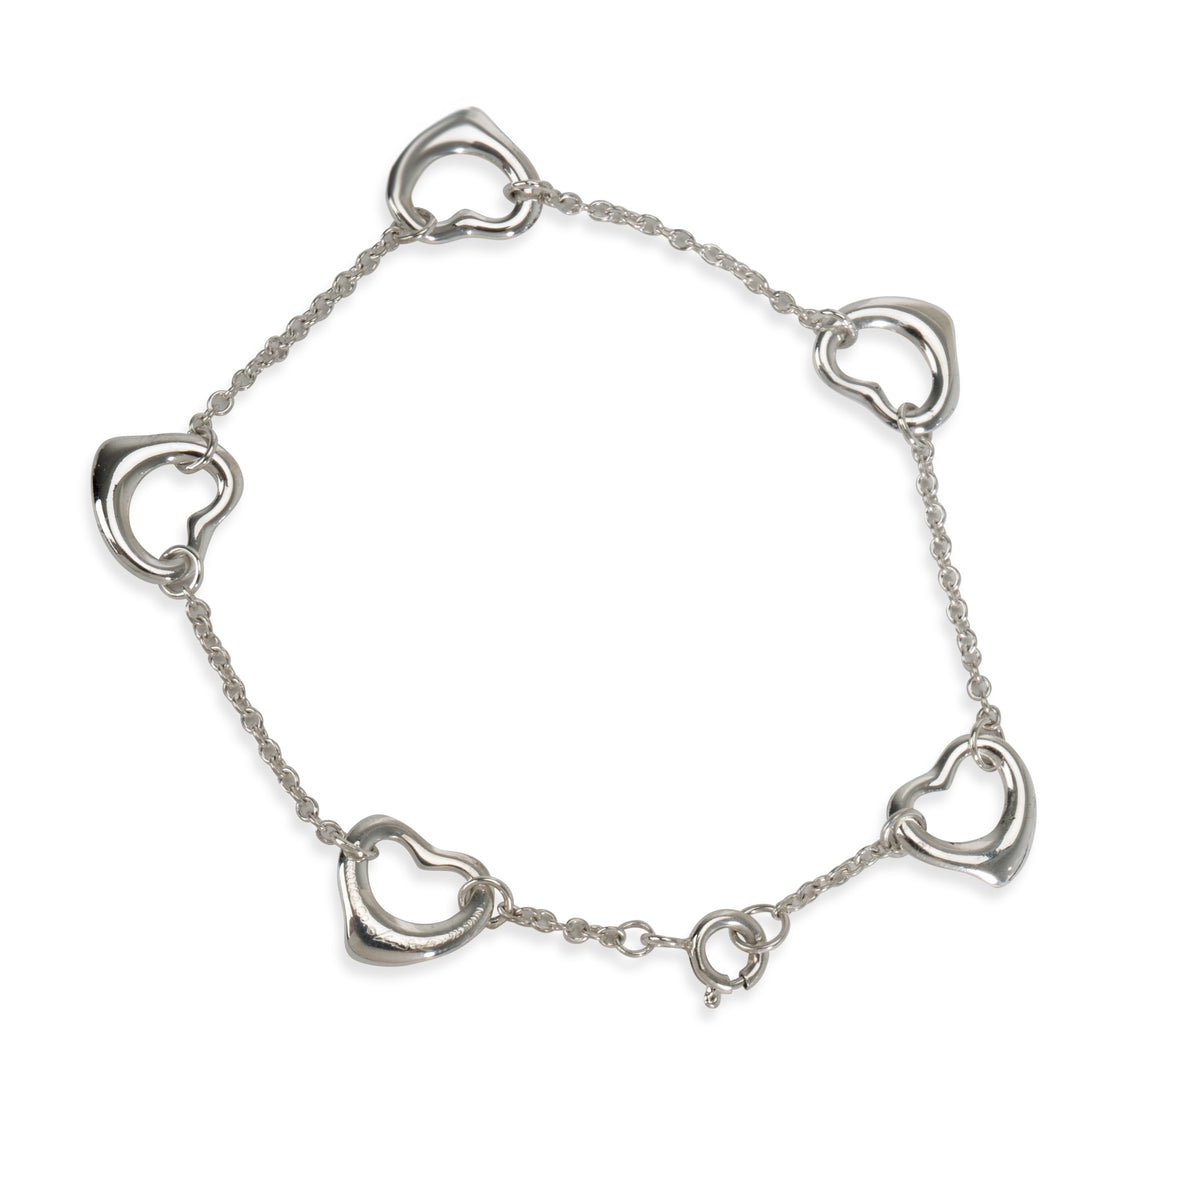 Tiffany & Co. Elsa Peretti 5 Station Open Heart Bracelet in  Sterling Silver